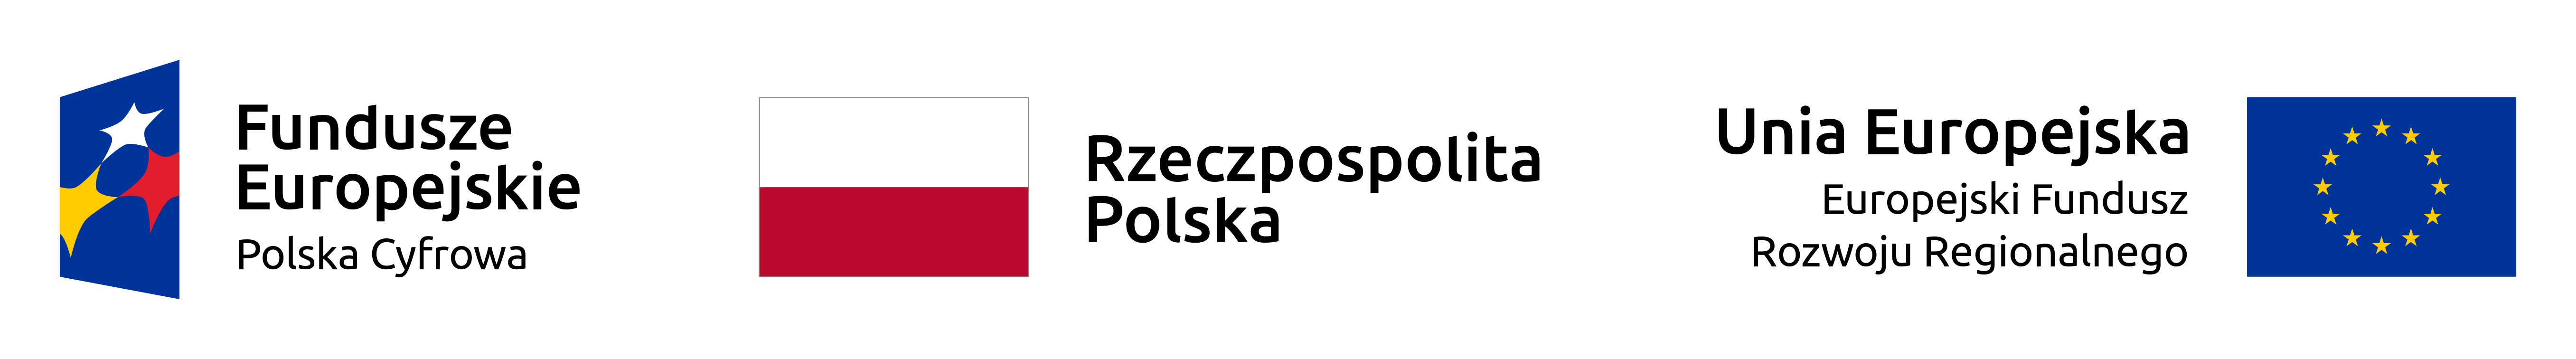 Logo UE, flaga Rzeczpospolitej Polski, Logo Fundusze Europejskie Polska Cyfrowa